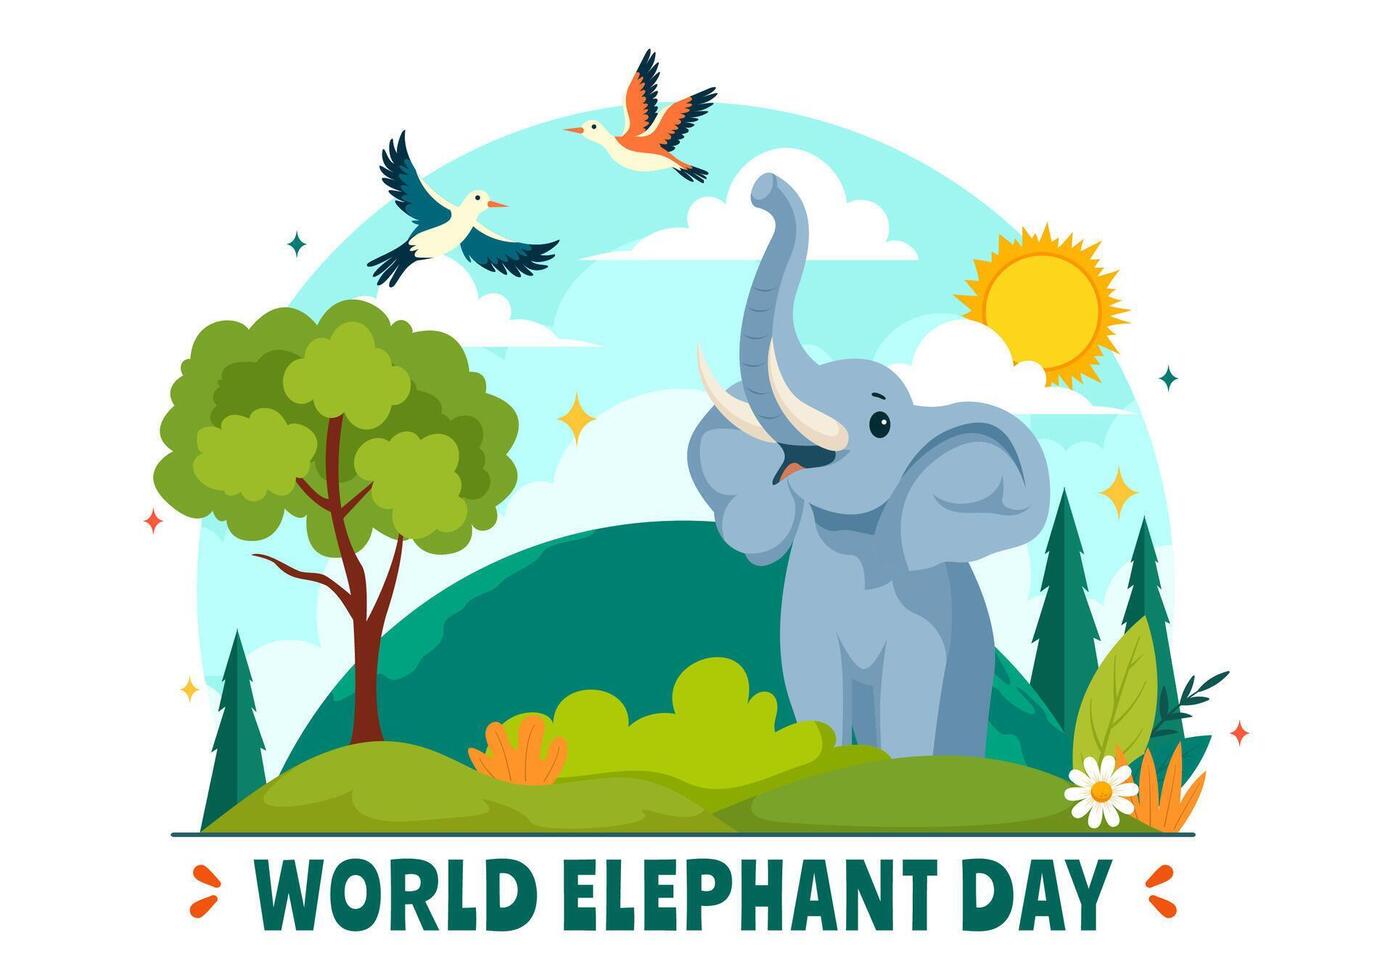 glücklich Welt Elefant Tag Illustration auf 12 August mit Elefanten Tiere zum Heil Bemühungen und Erhaltung im eben Karikatur Hintergrund vektor